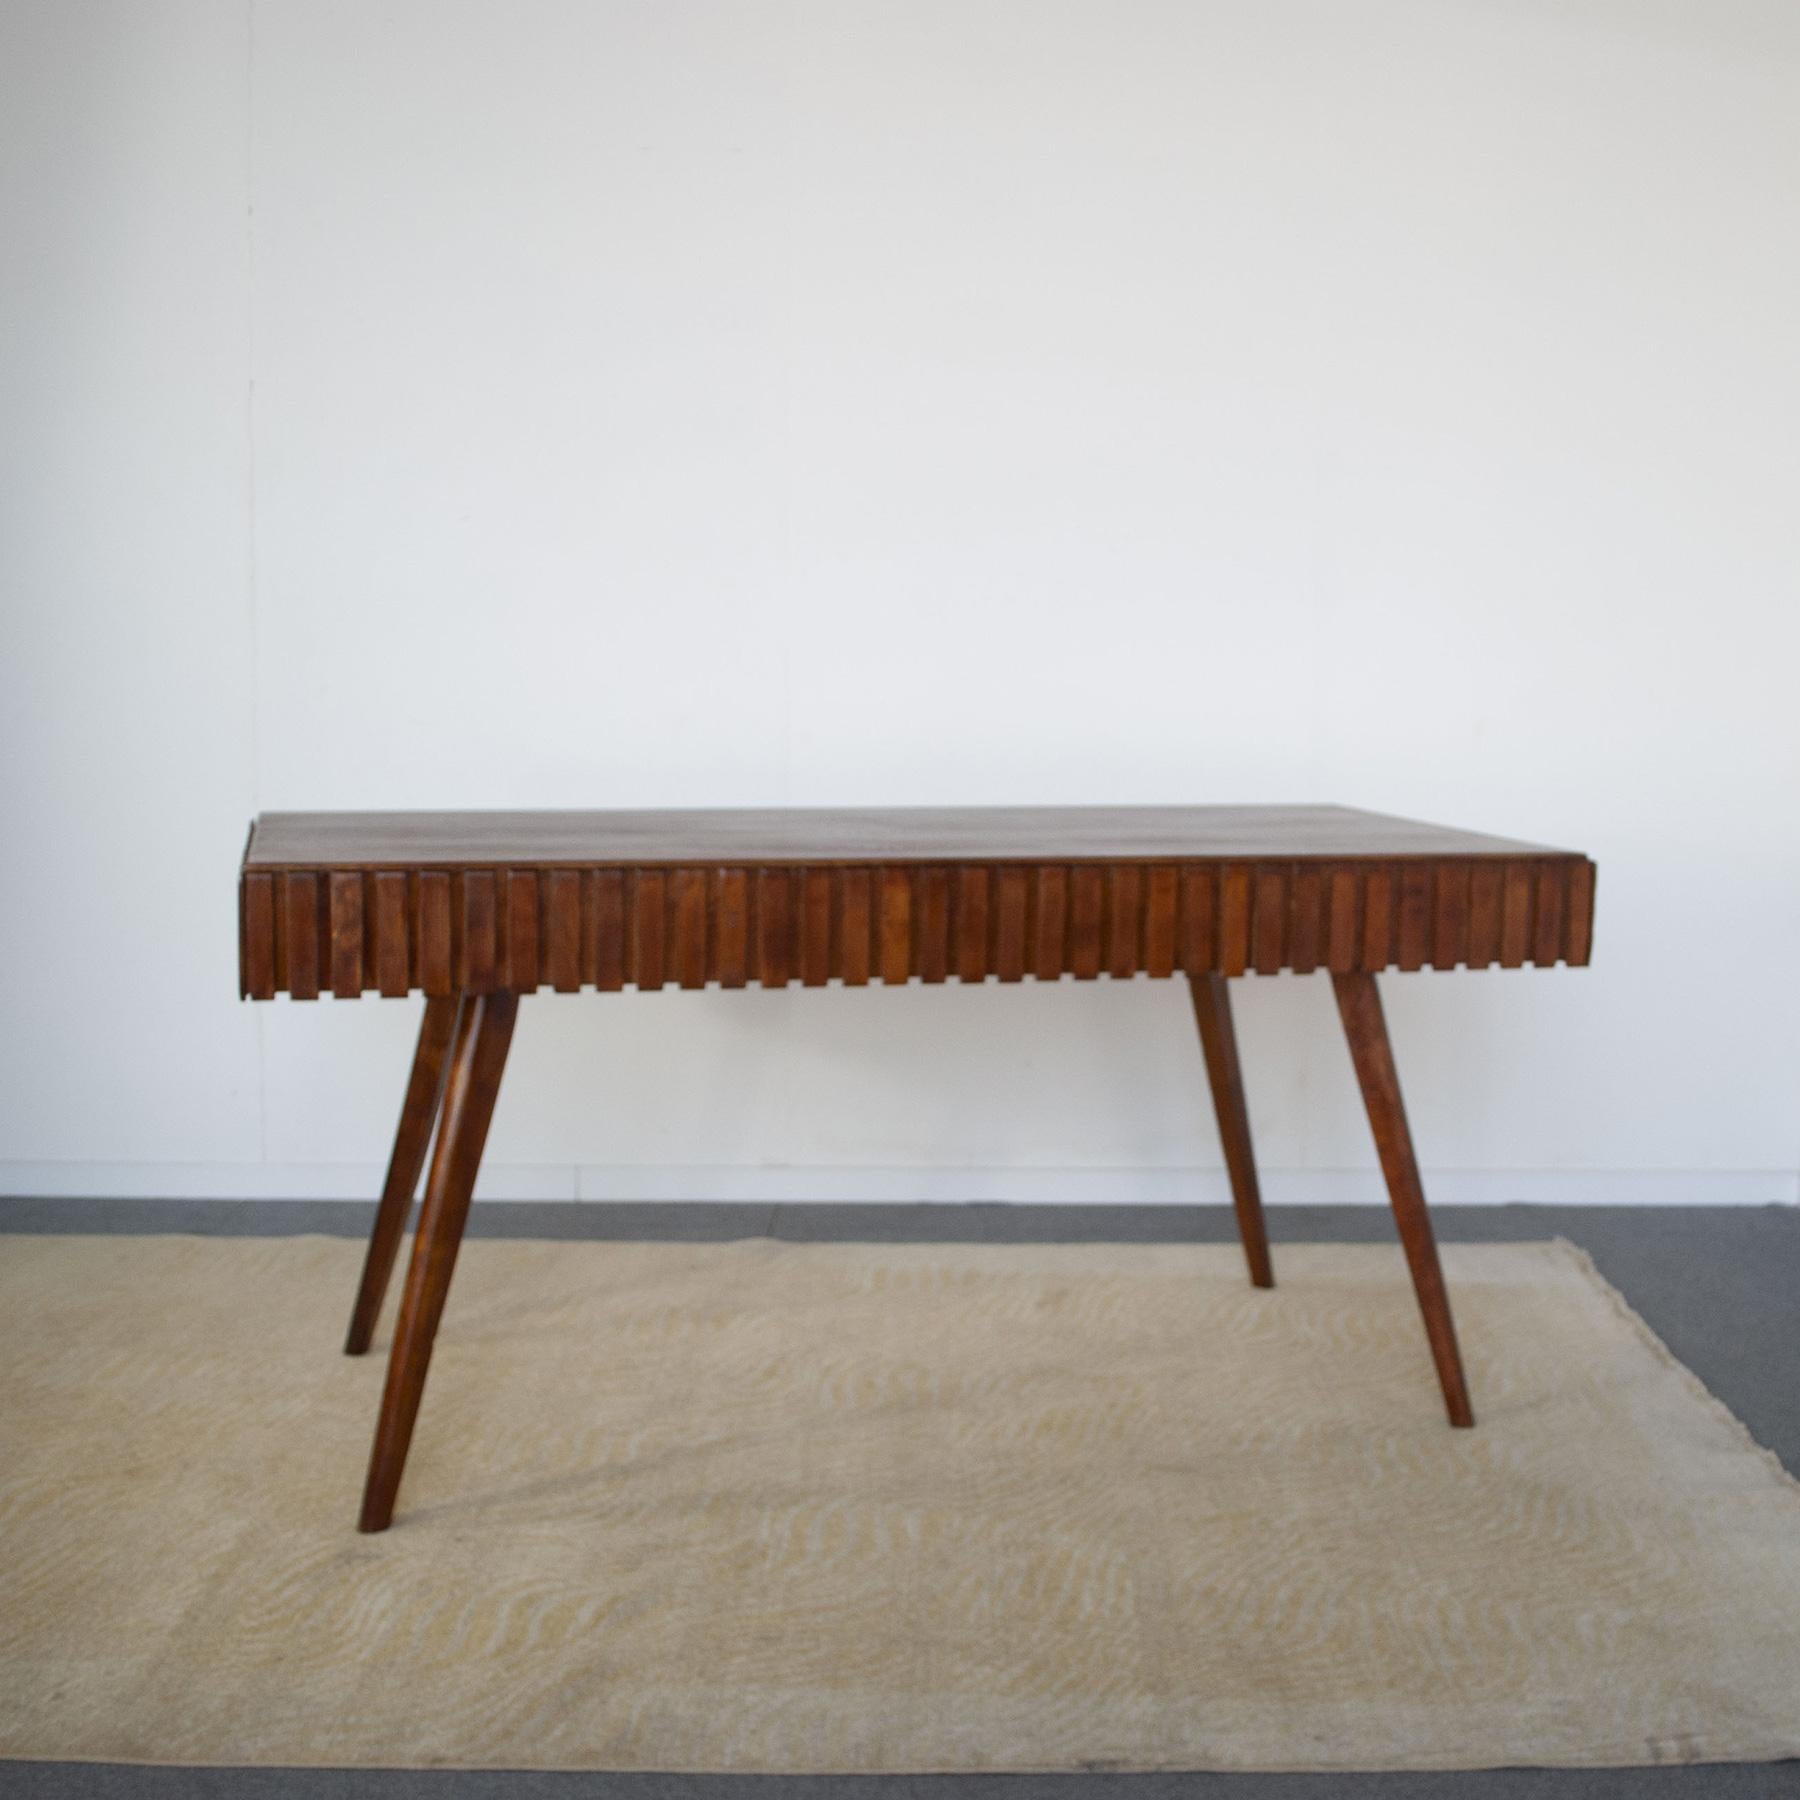 Simple mais élégante table en bois marqueté et travaillé attribuée aux premiers travaux de Paolo Buffa à la fin des années 1950. La table présente deux tiroirs cachés qui, en plus d'être des rangements, peuvent servir de rallonge.

La table dispose